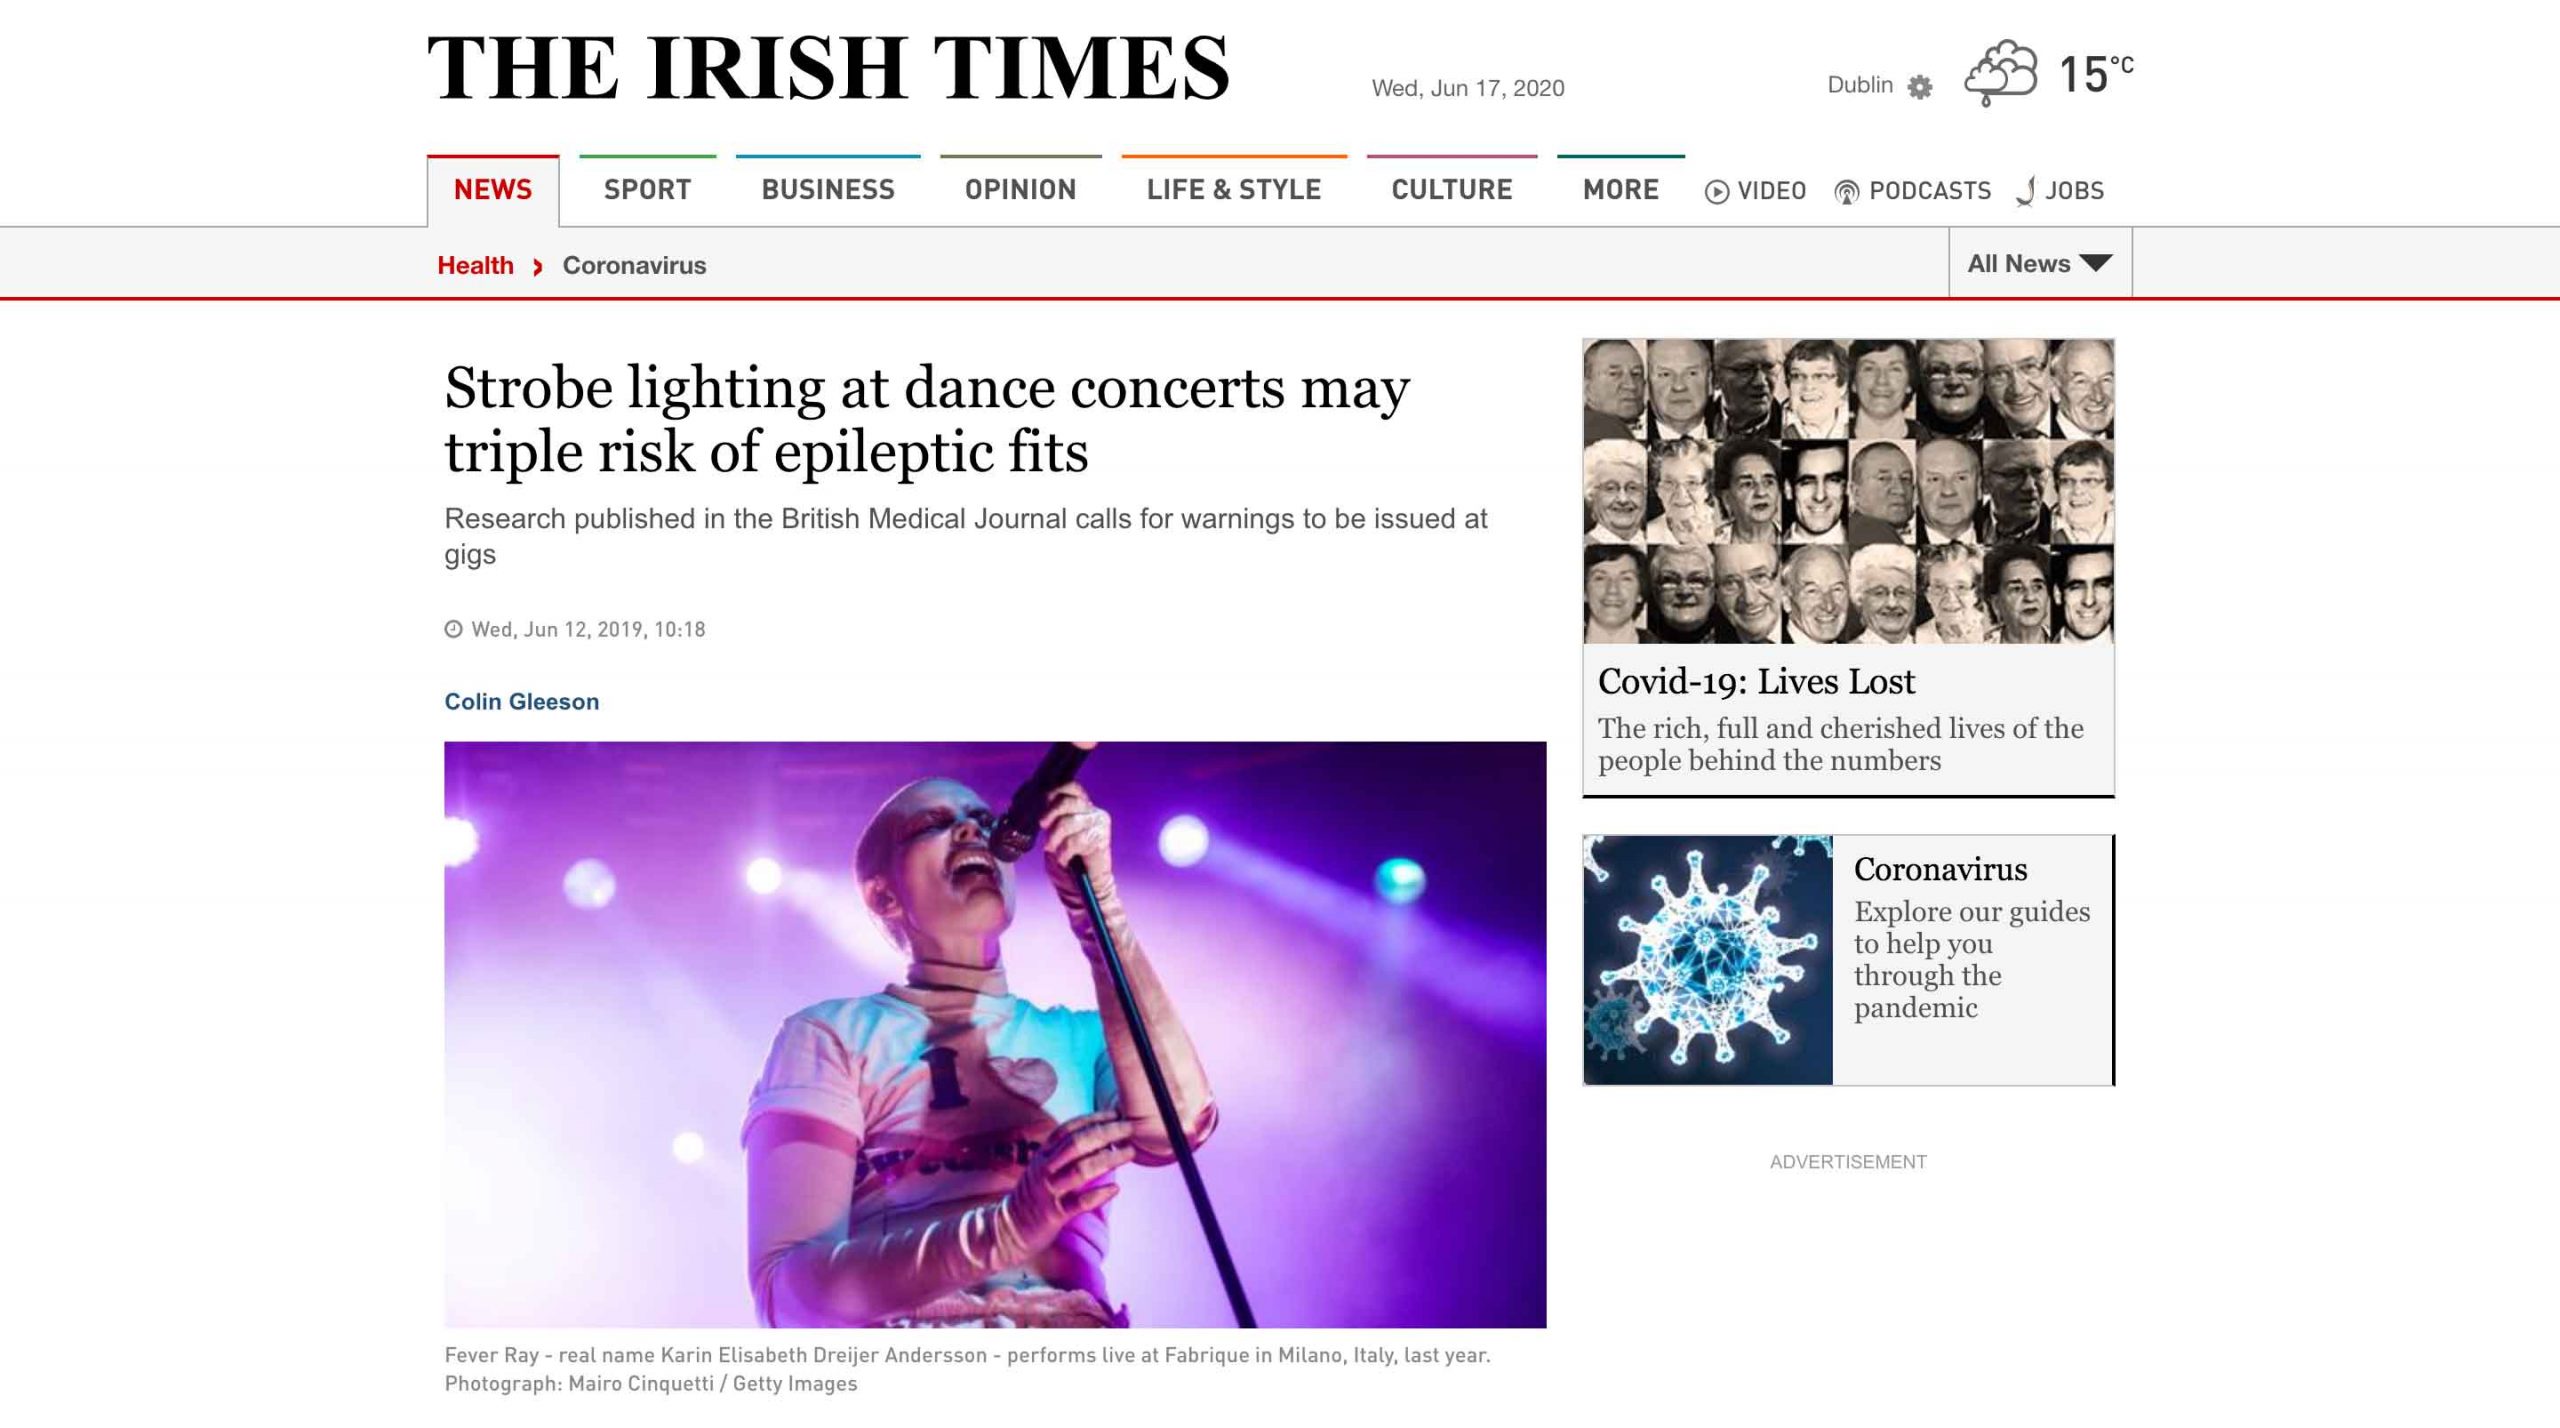 Il concerto di Fever Ray a Milano in una pubblicazione su The Irish Times, foto di Mairo Cinquetti